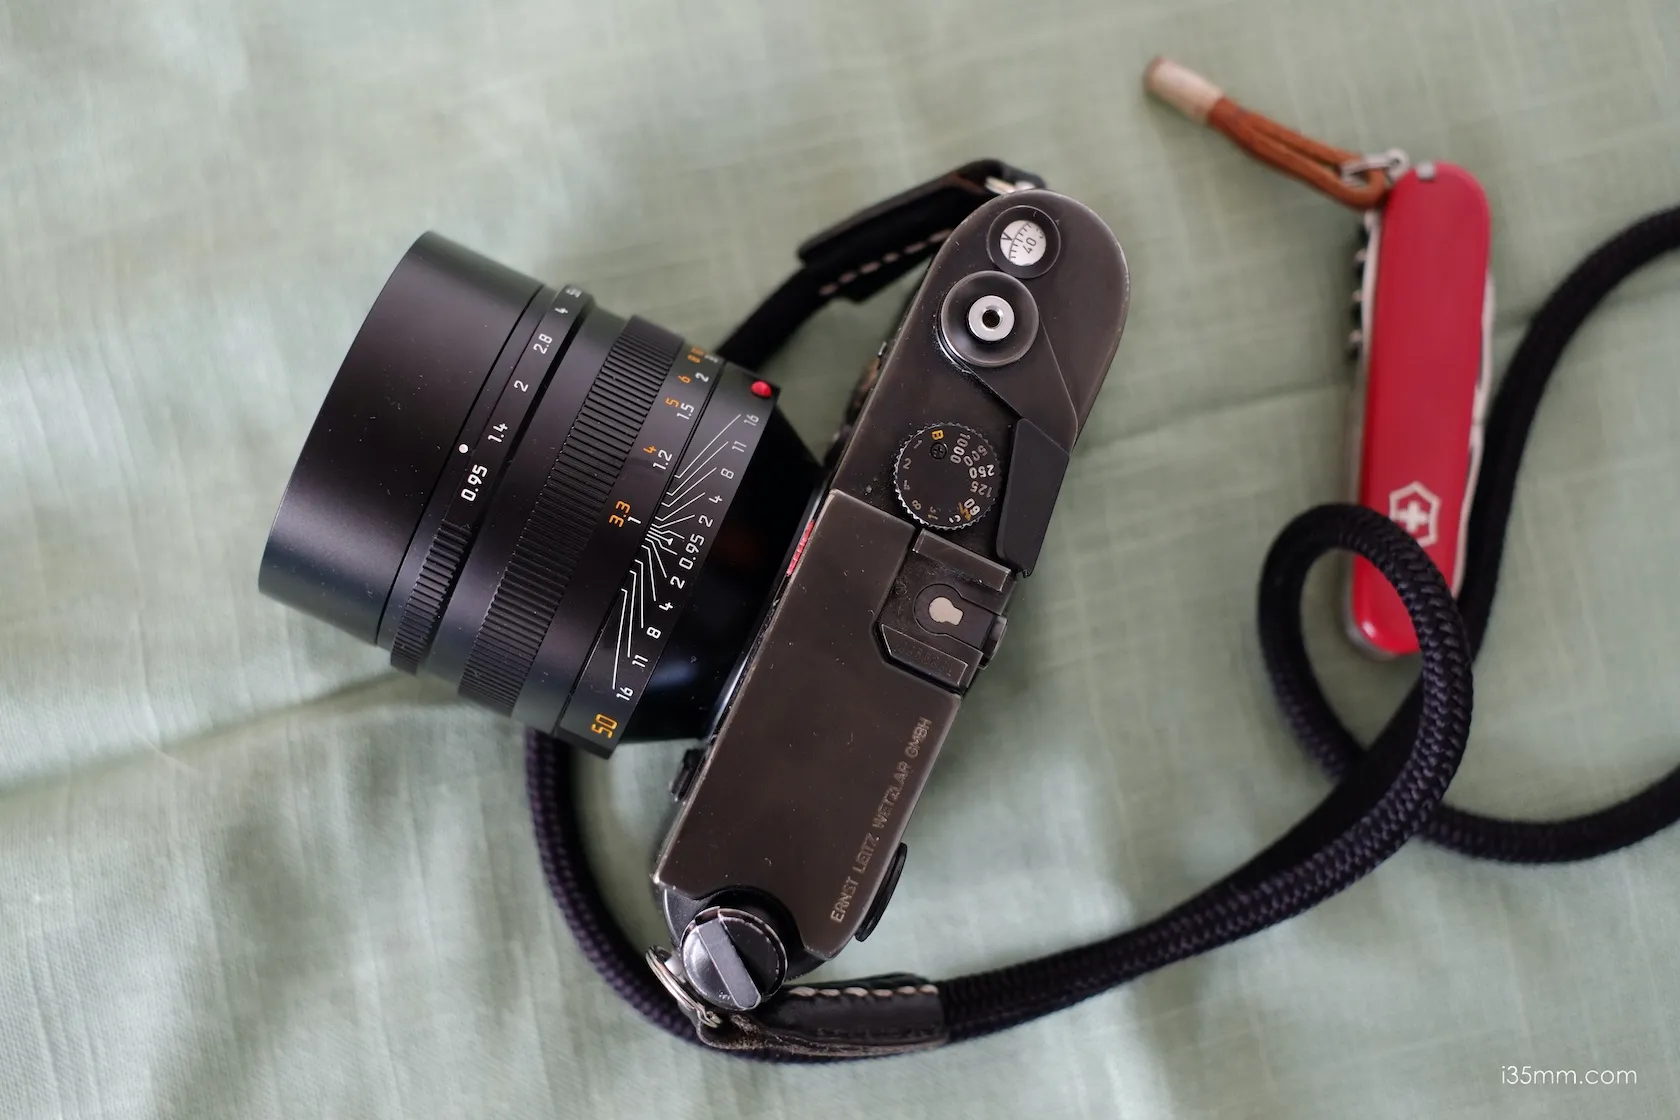 Leica Noctilux-M 50mm f/0.95 ASPH